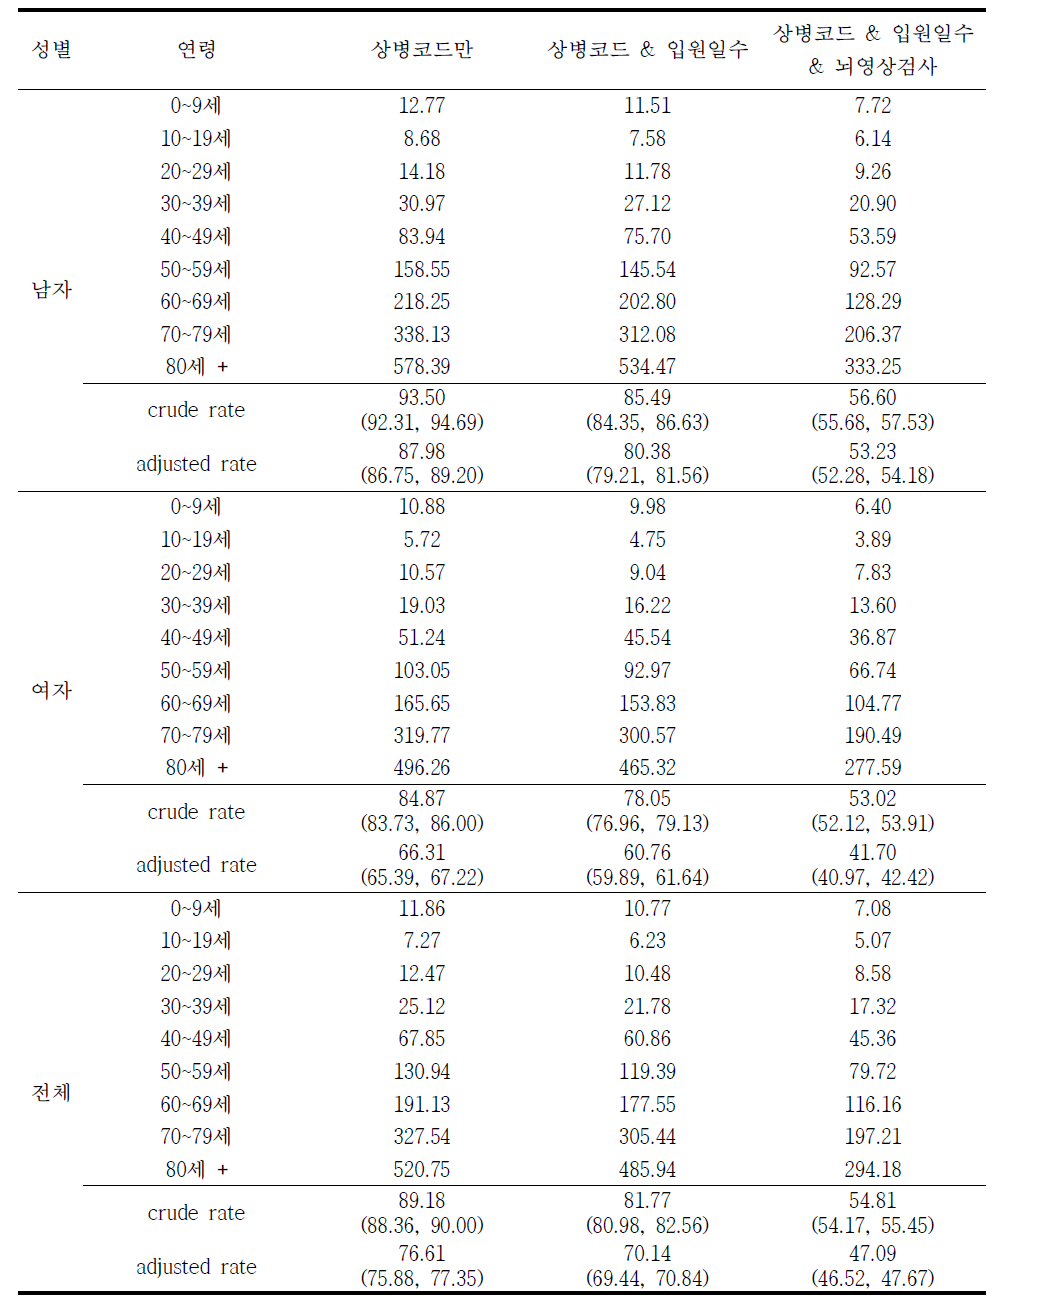 2014년 출혈성 뇌졸중 (I60-I62) 발생률 (10만명당)